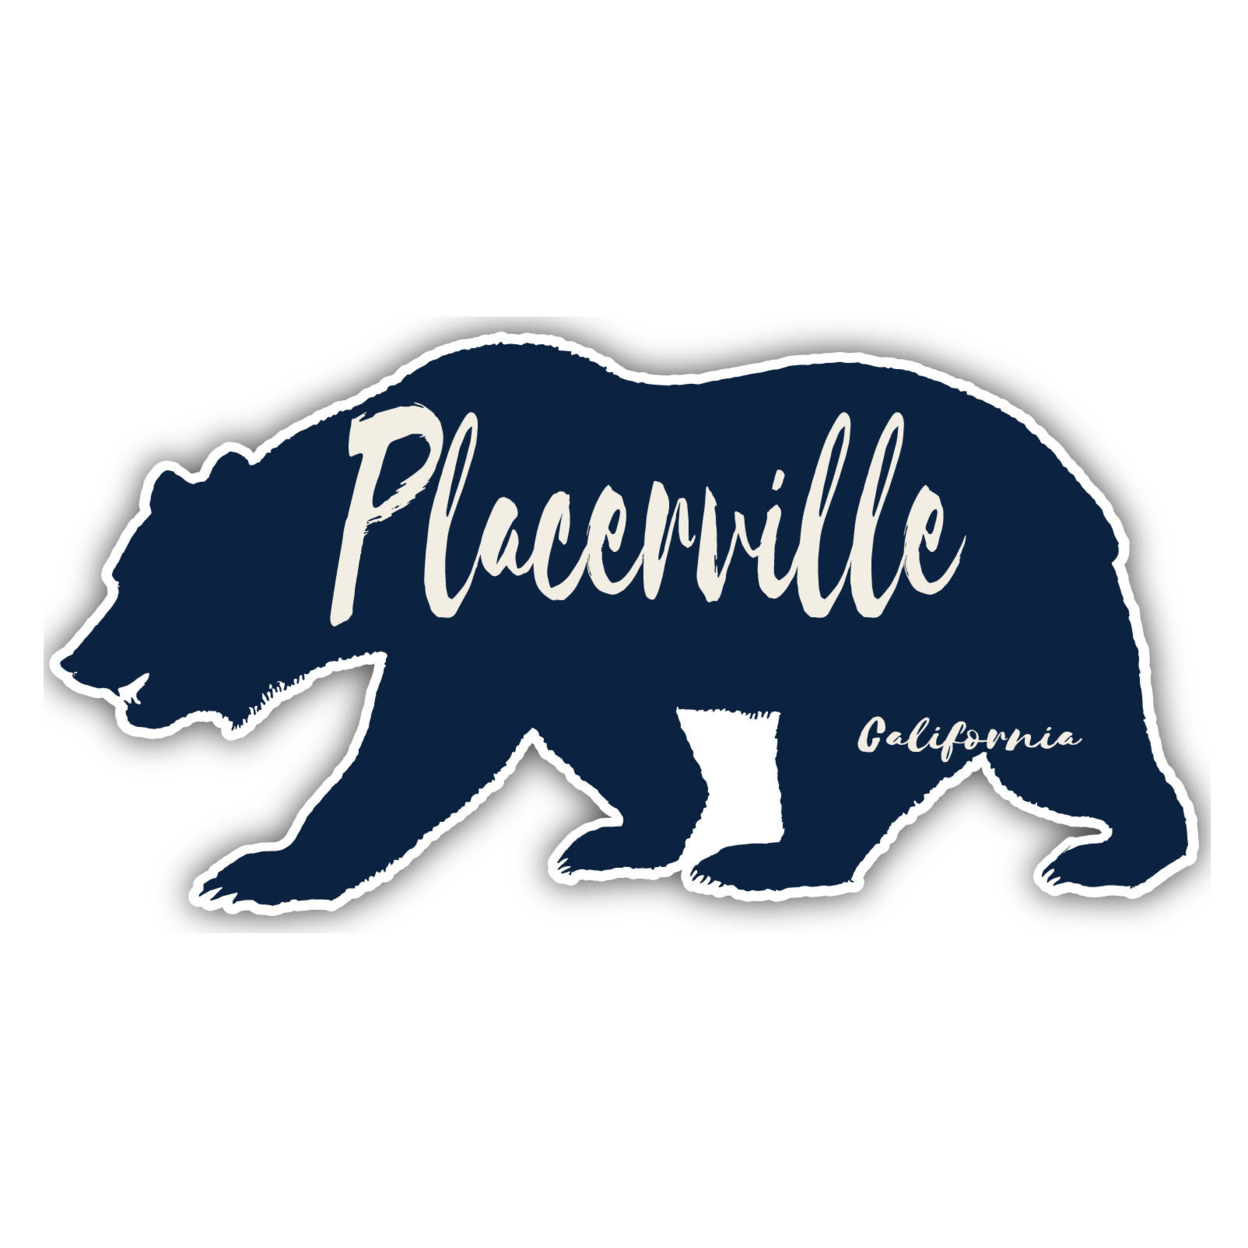 Placerville California Souvenir Decorative Stickers (Choose Theme And Size) - Single Unit, 4-Inch, Tent